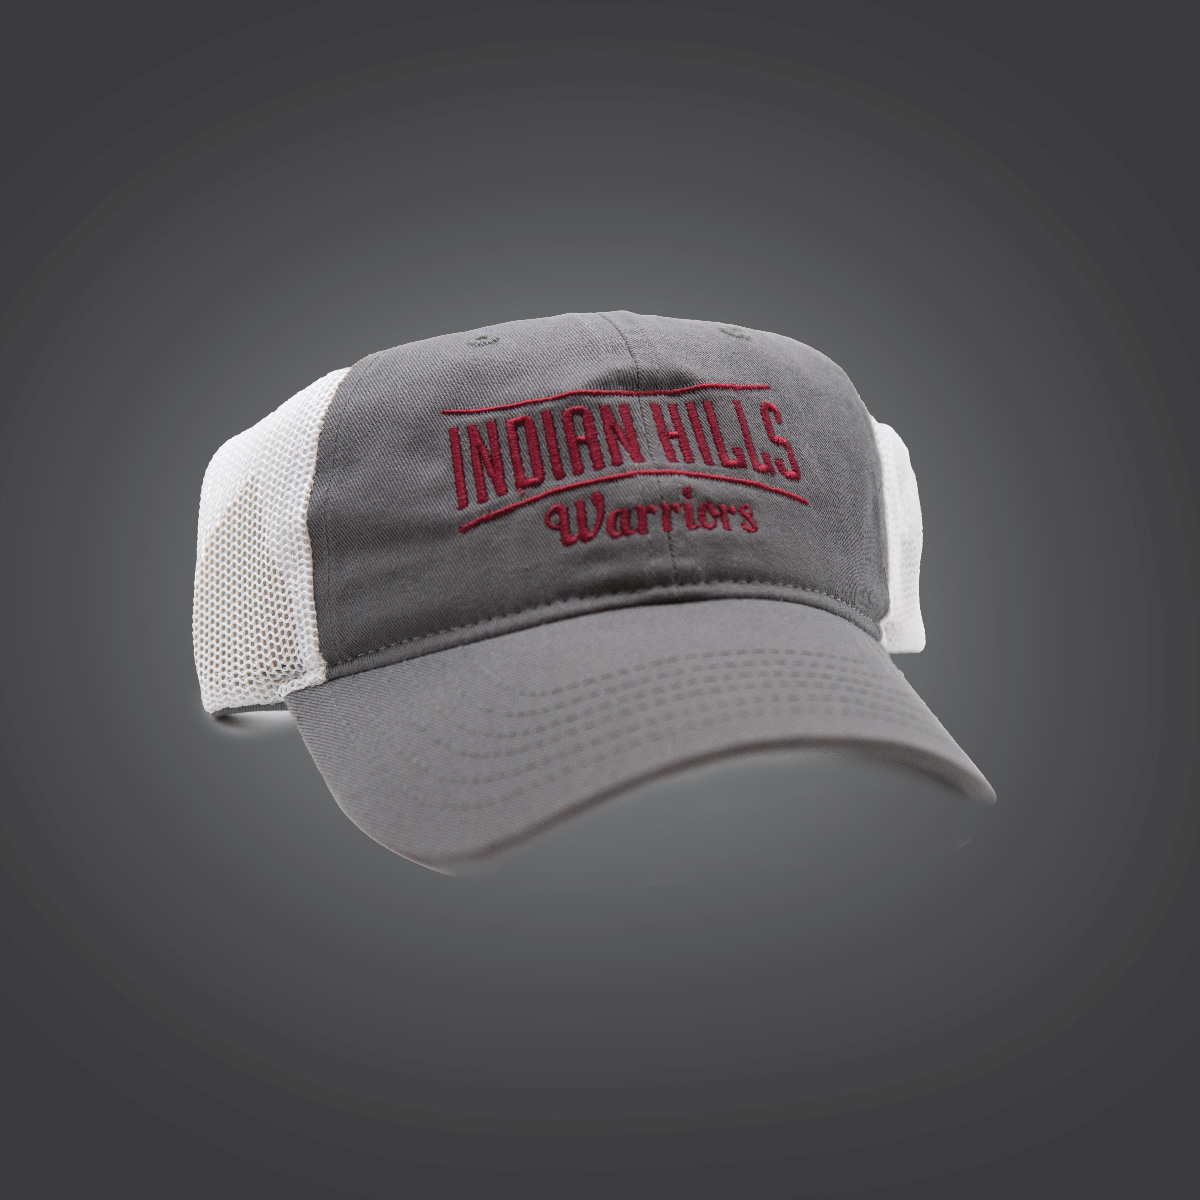 Trucker Hat Grey/White